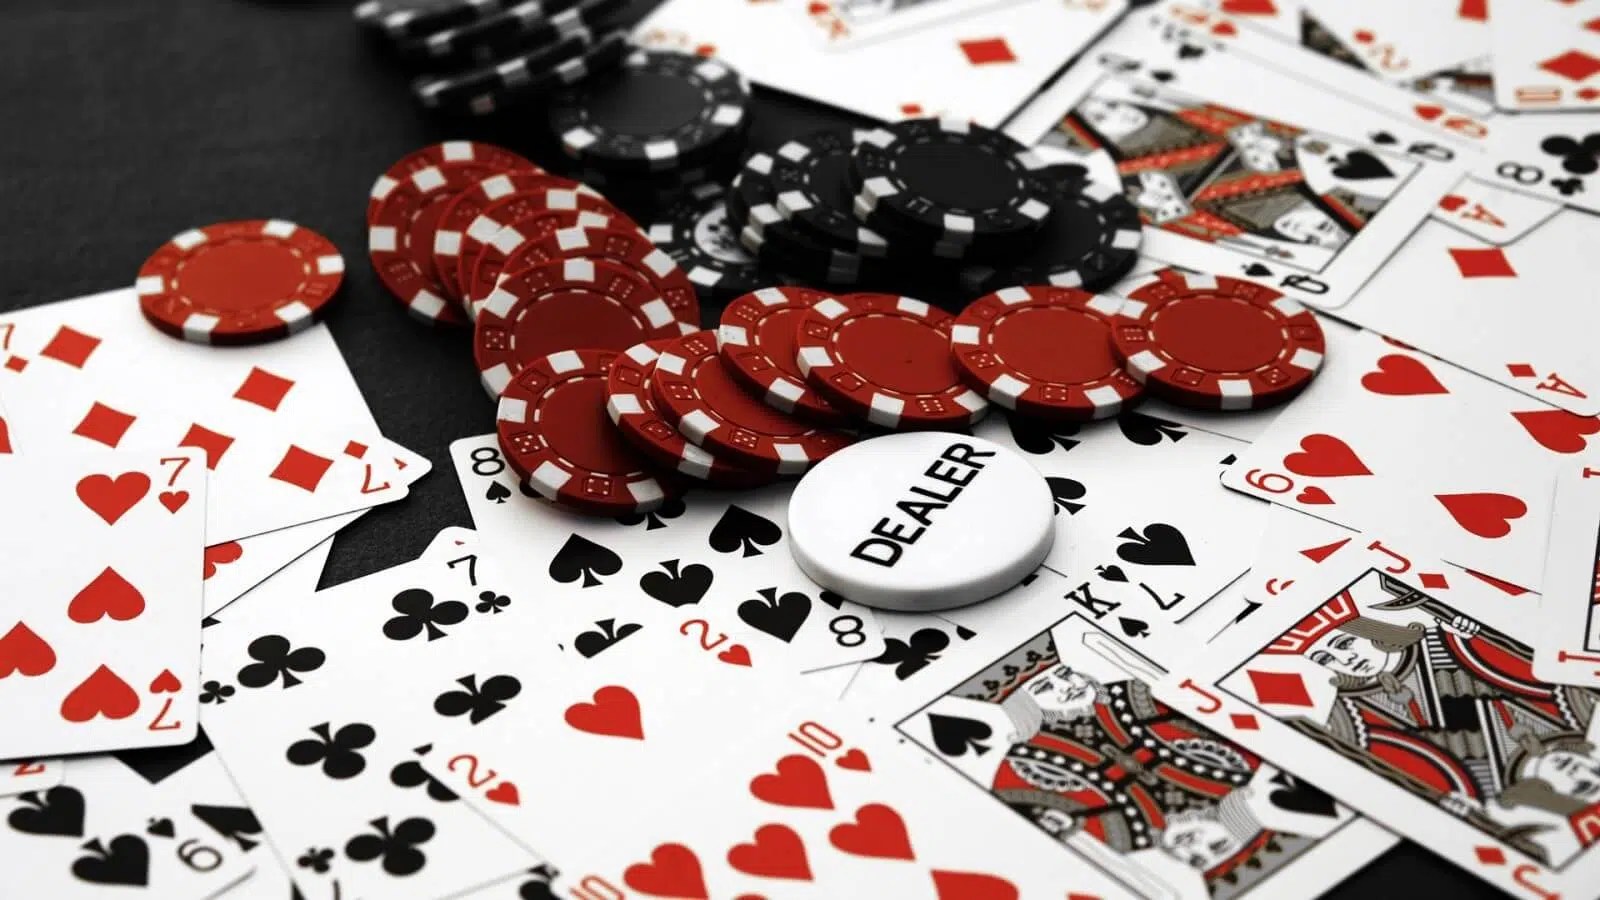 cards-poker-poker-chips-casino